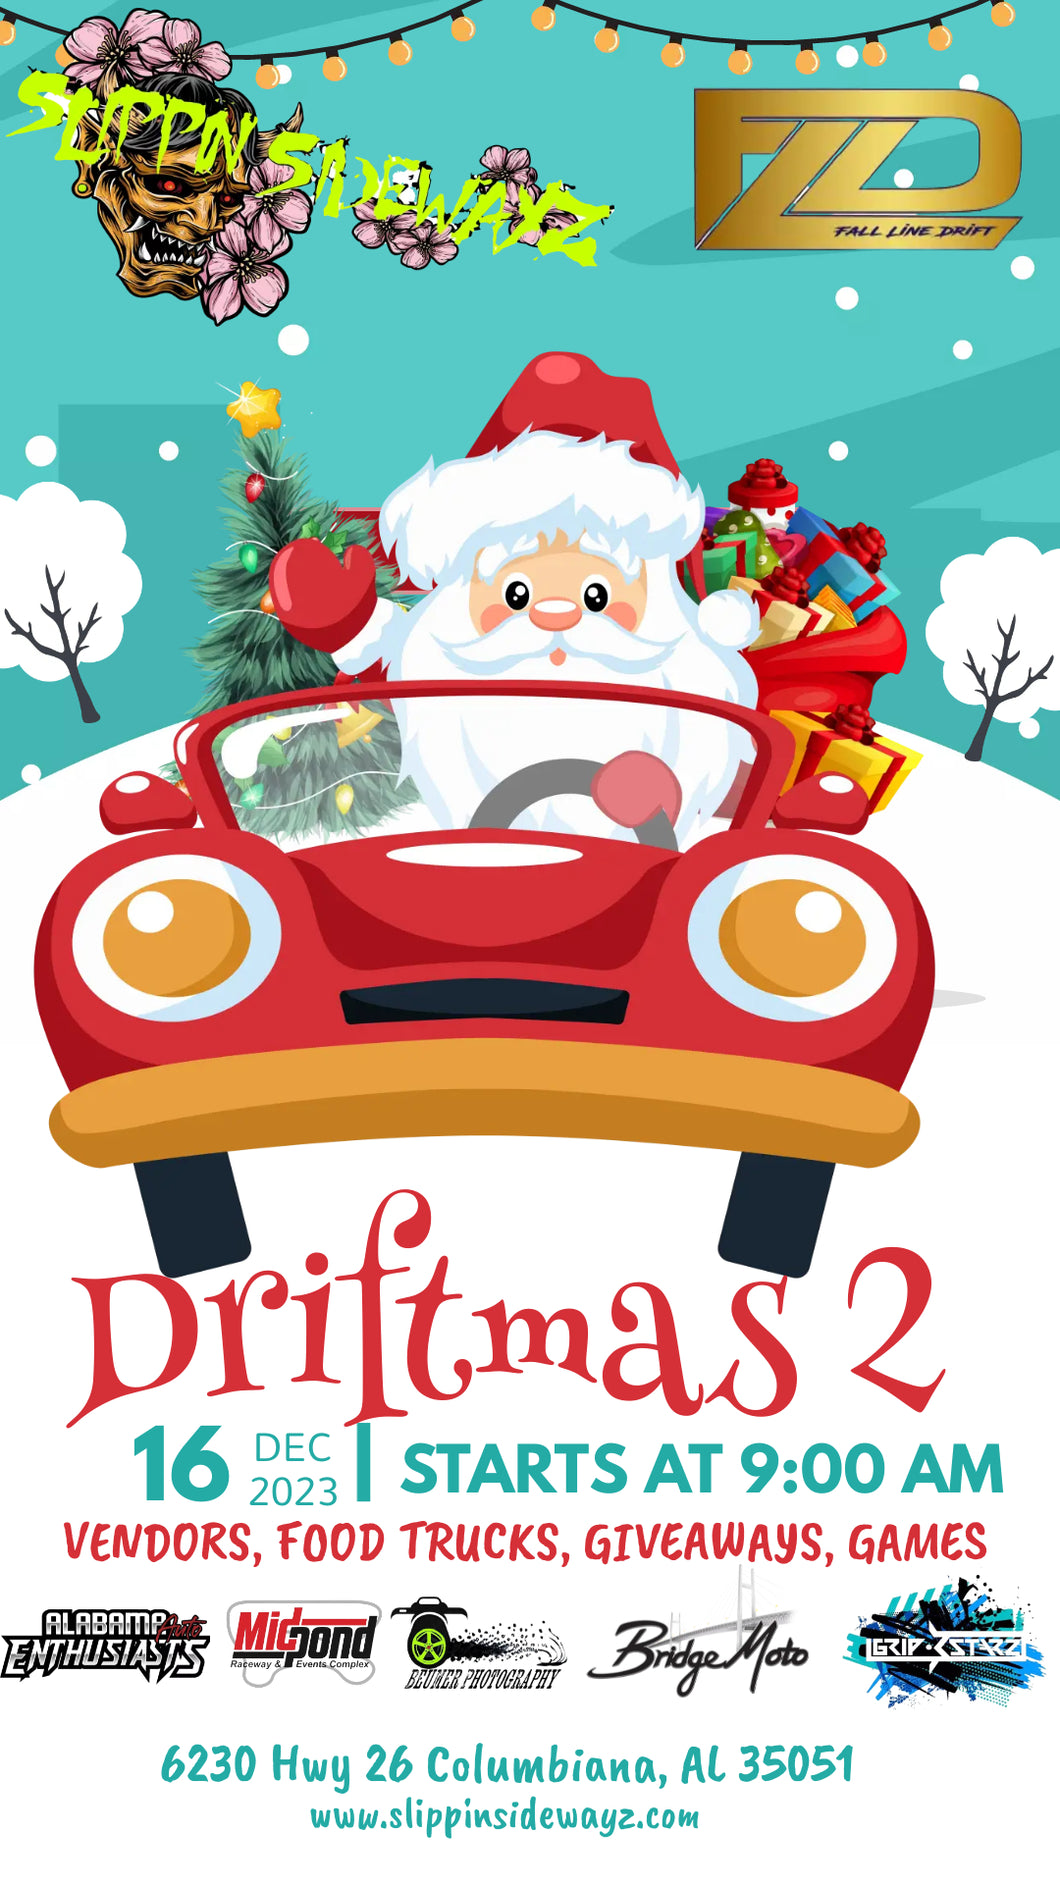 Driftmas 2 - Dec 16th